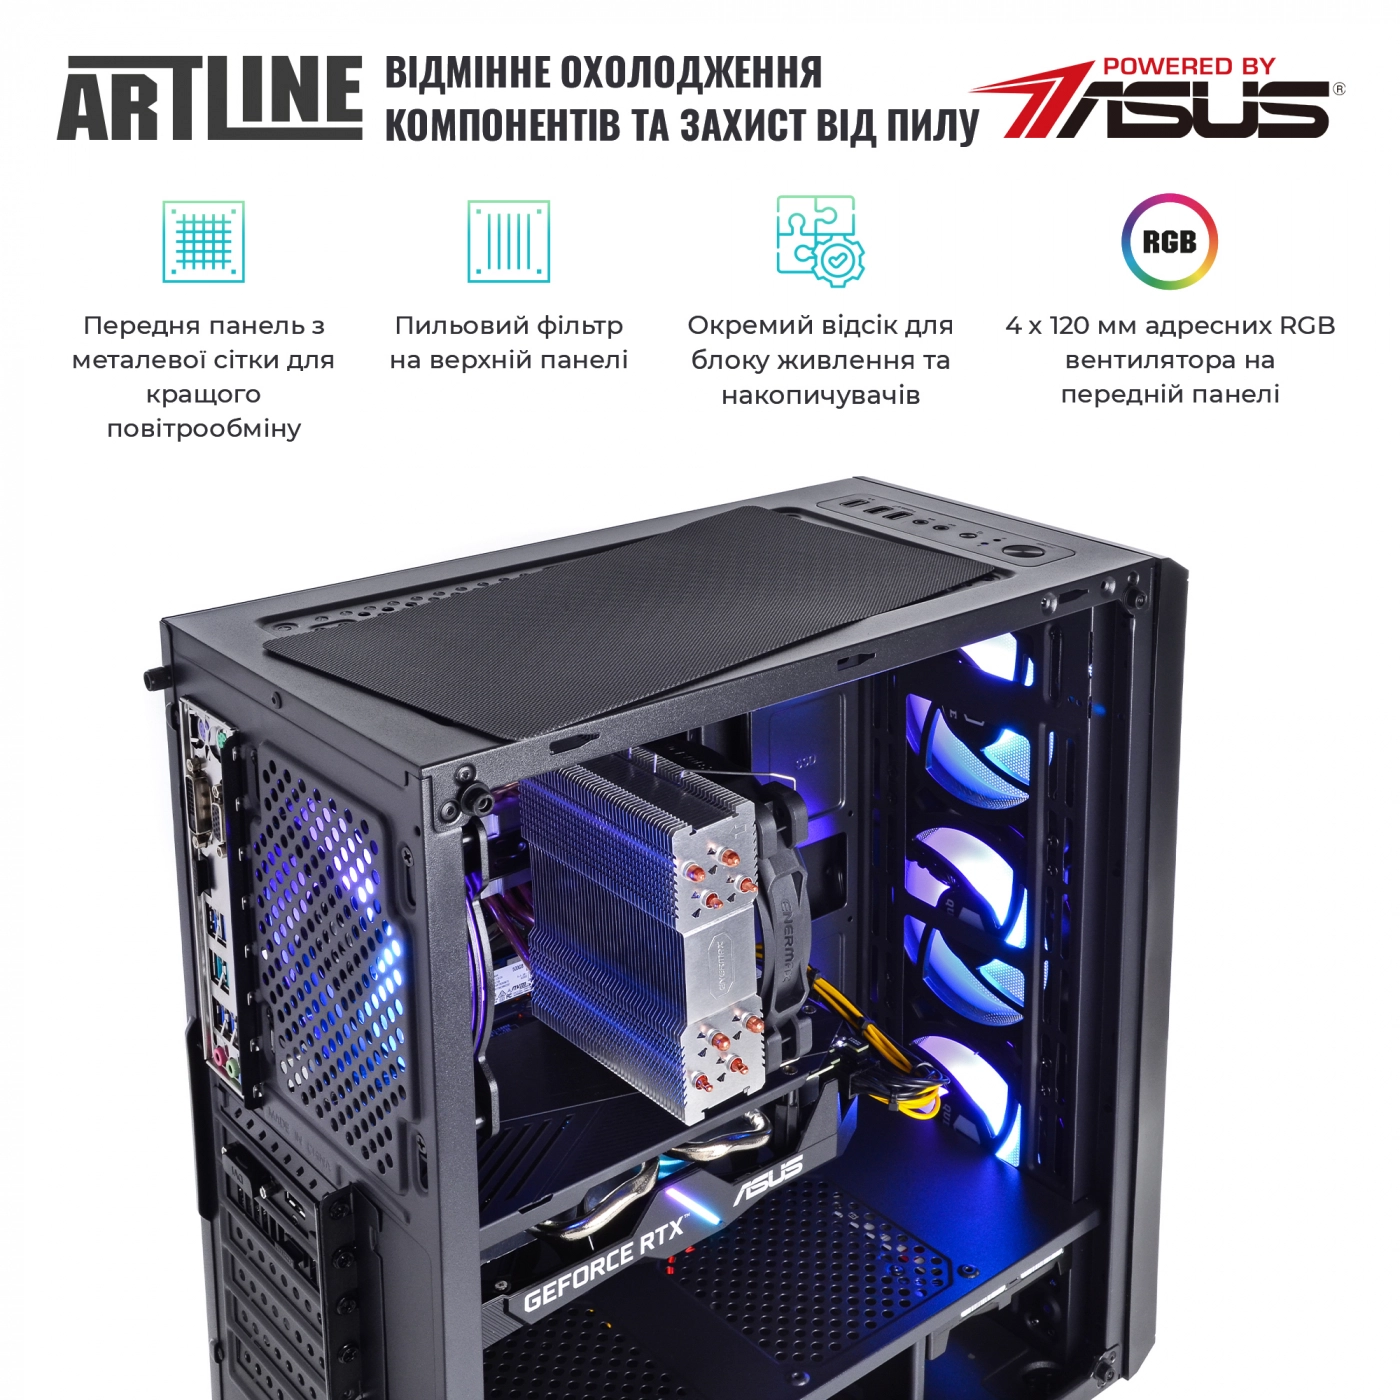 Купить Компьютер ARTLINE Gaming X77v56 - фото 4